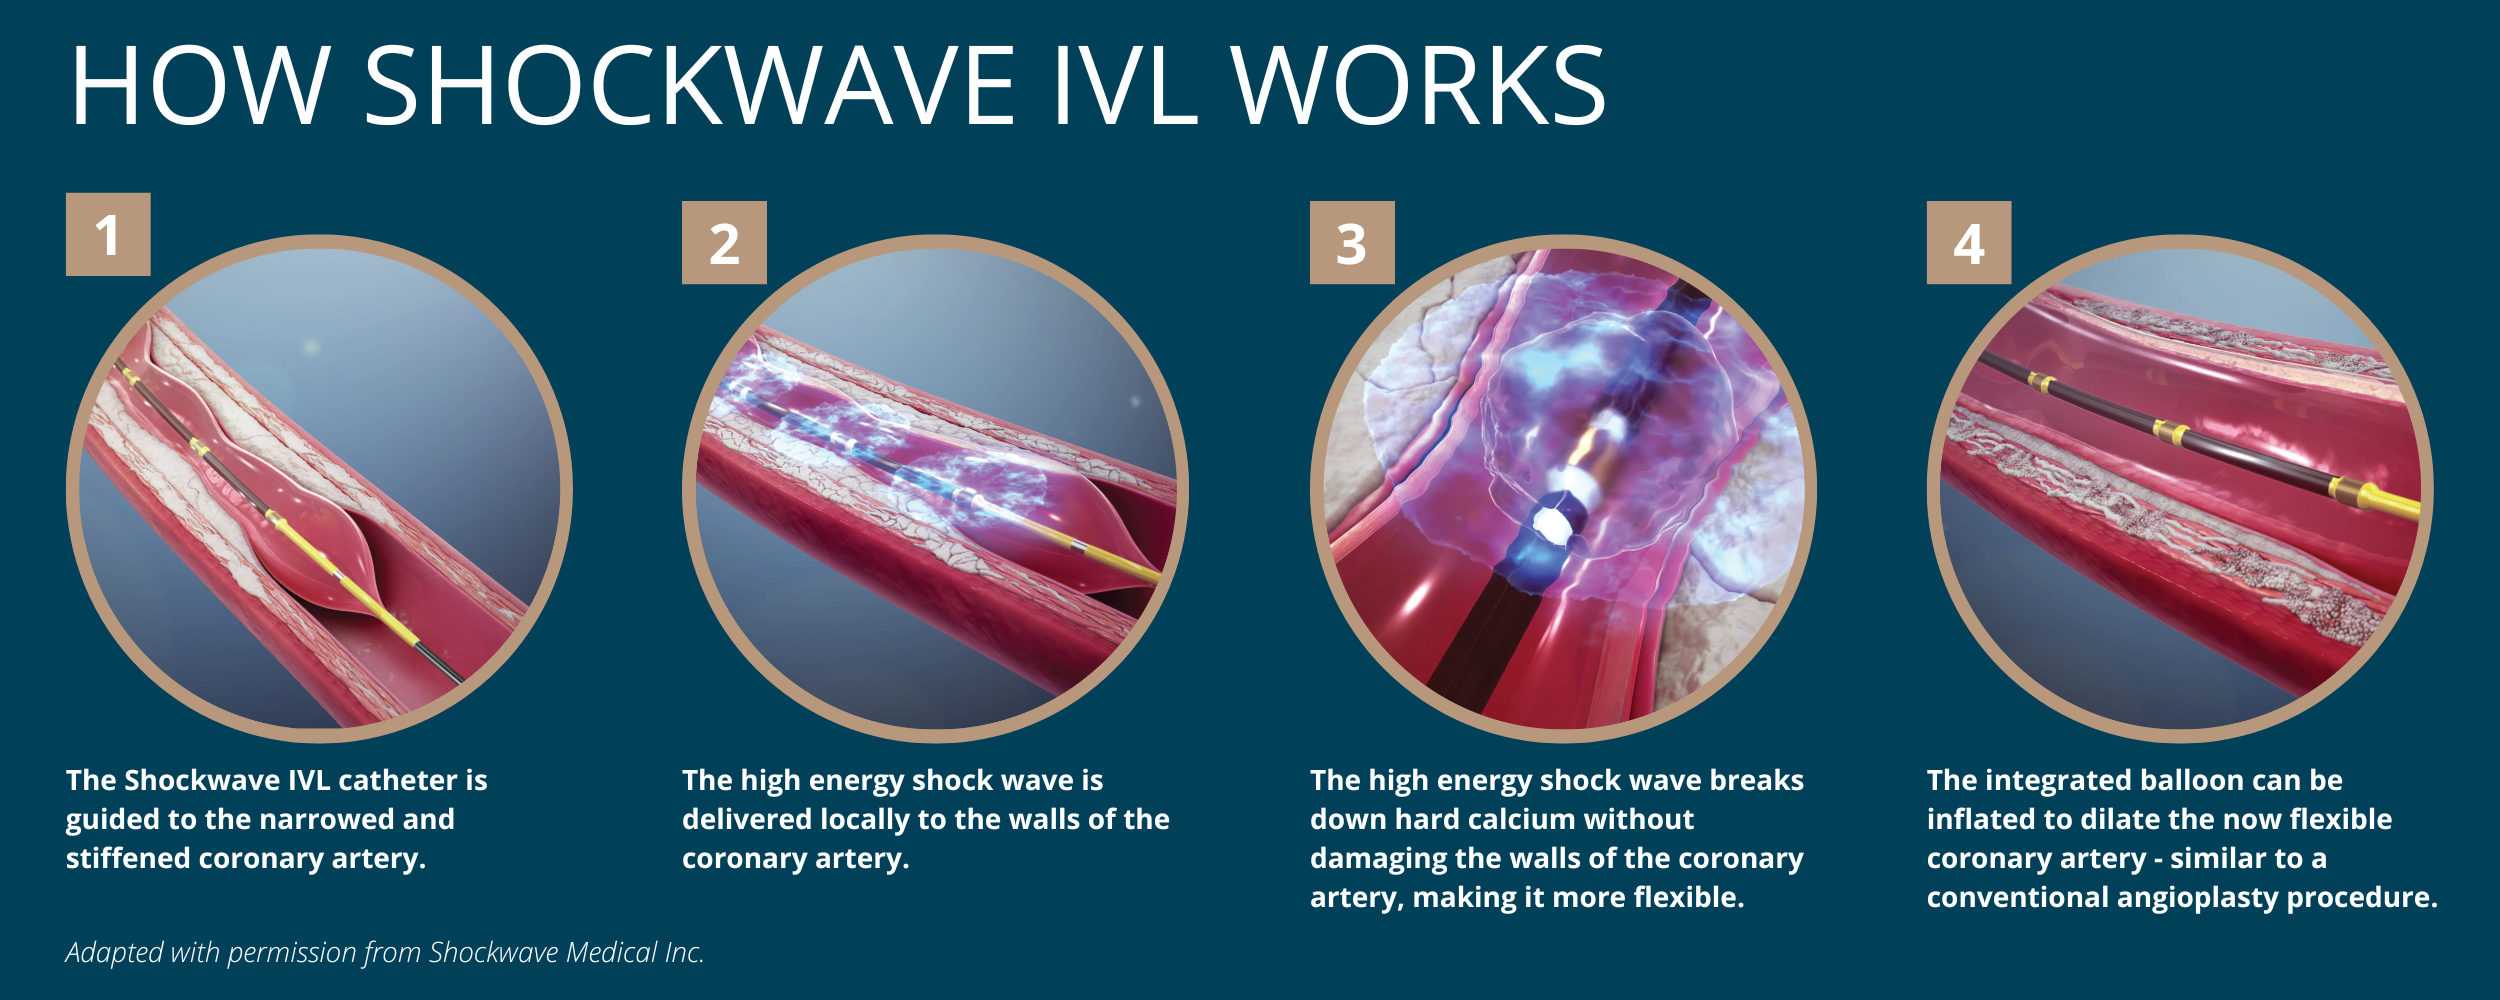 How shockwave IVL works